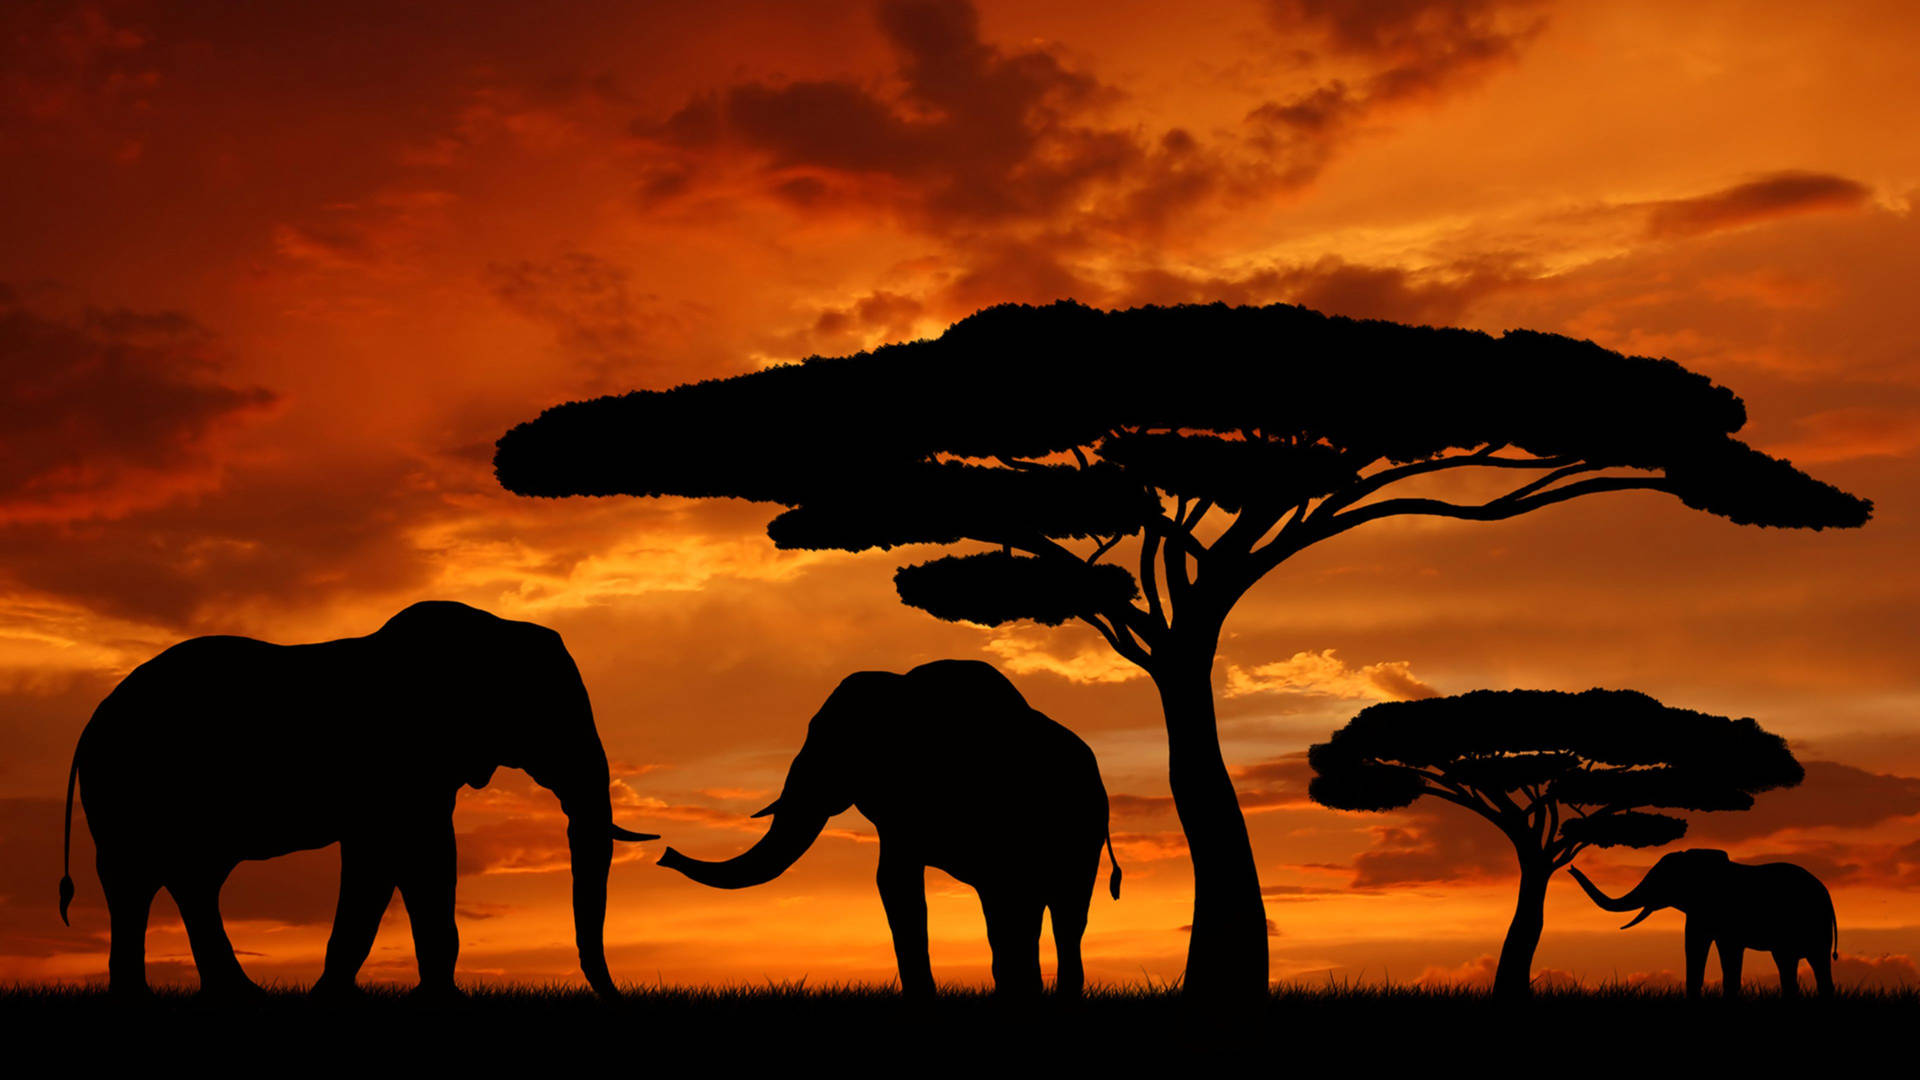 Kenya Safari Sunset Wallpaper